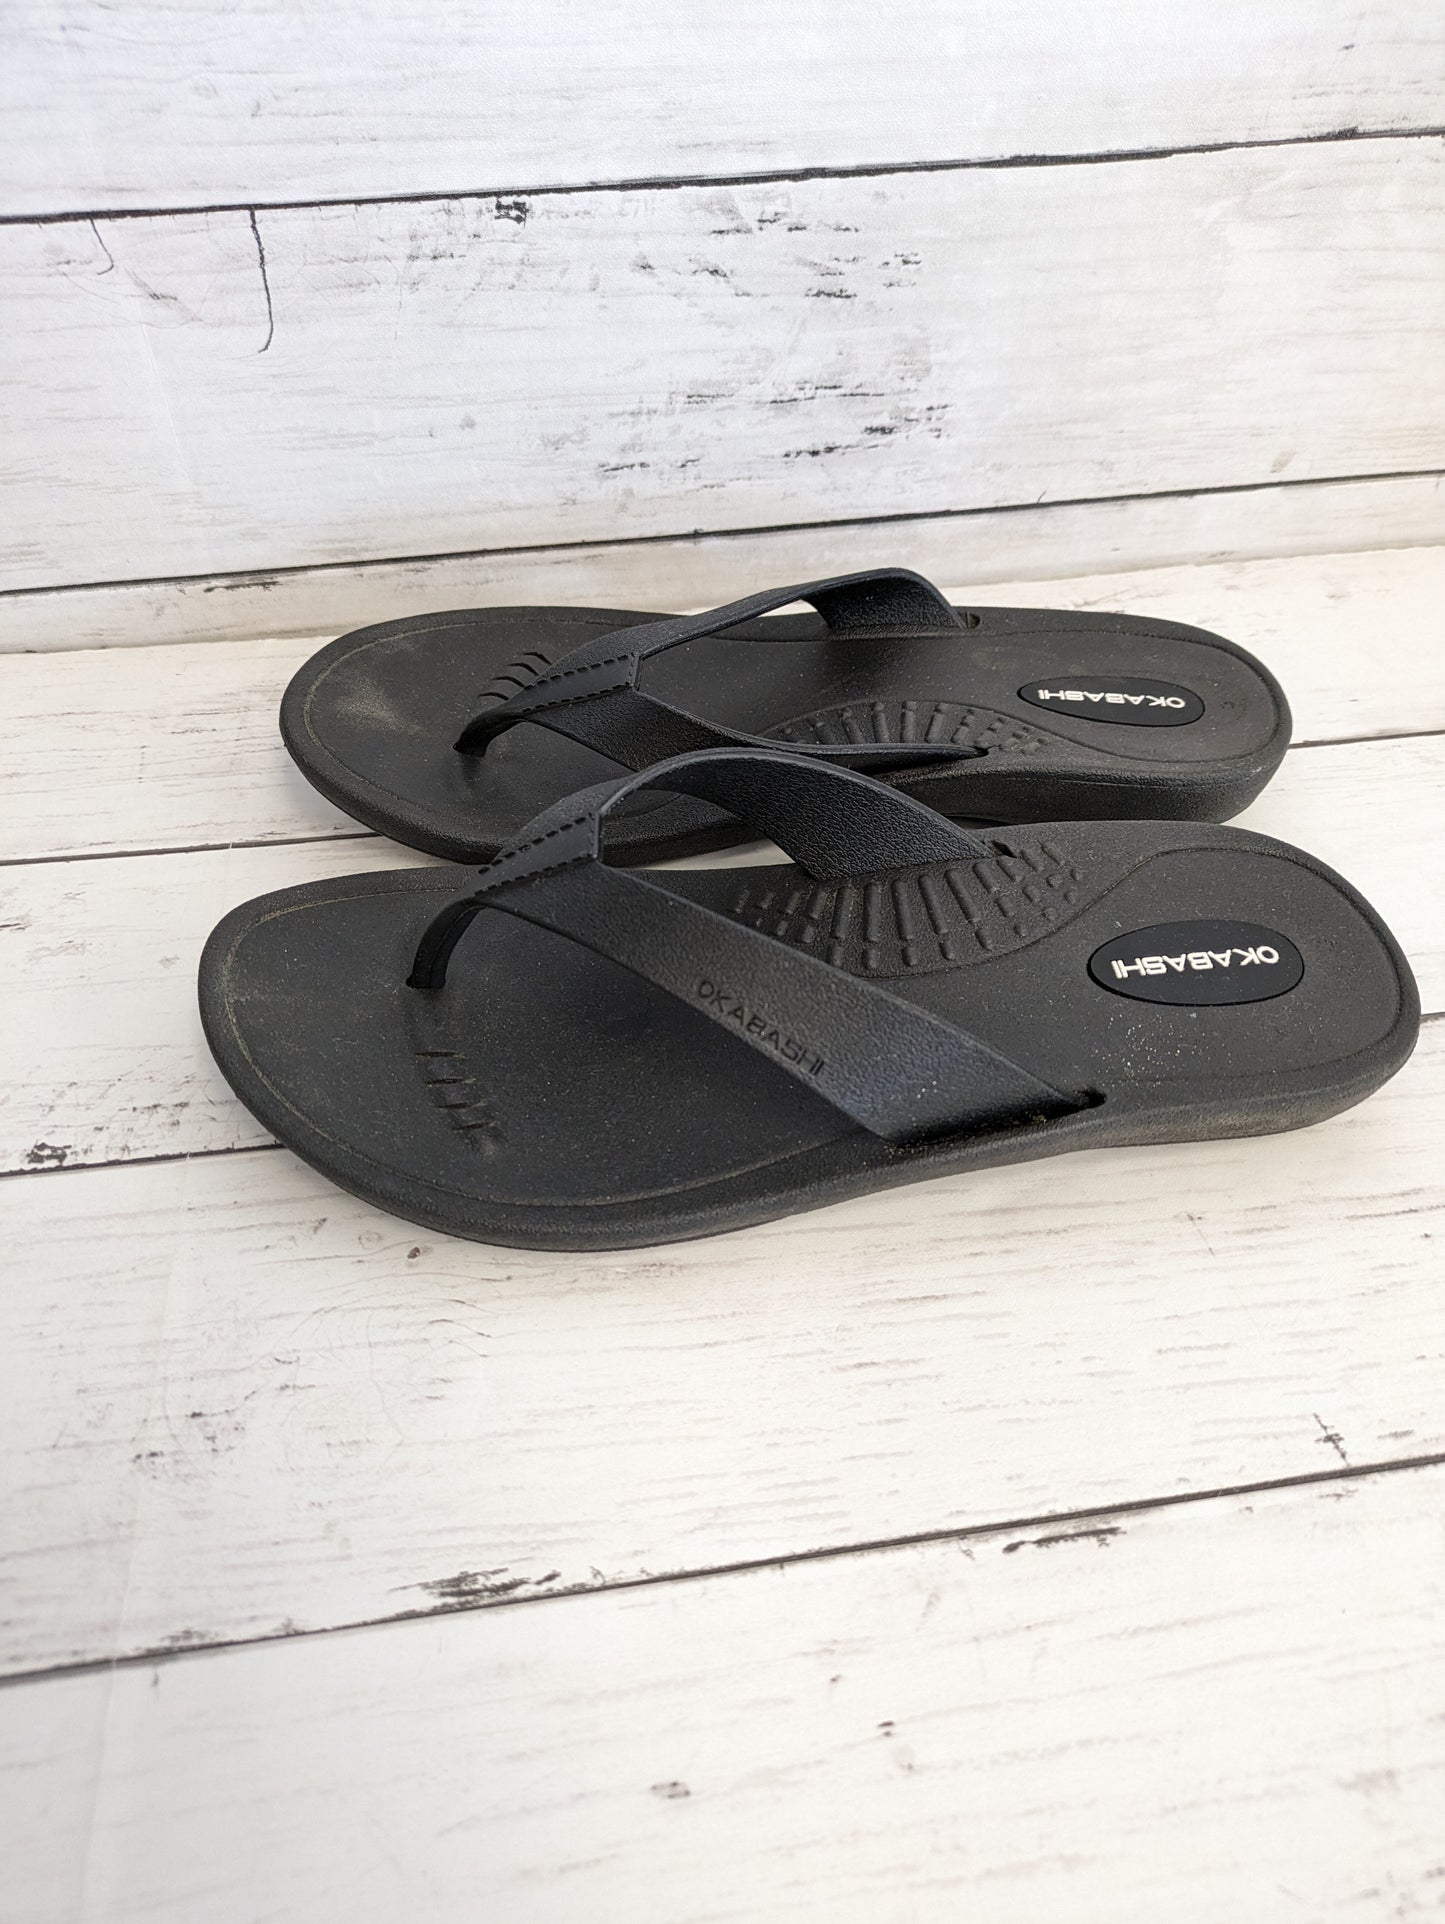 Sandals Flip Flops By OKABSHI  Size: 7